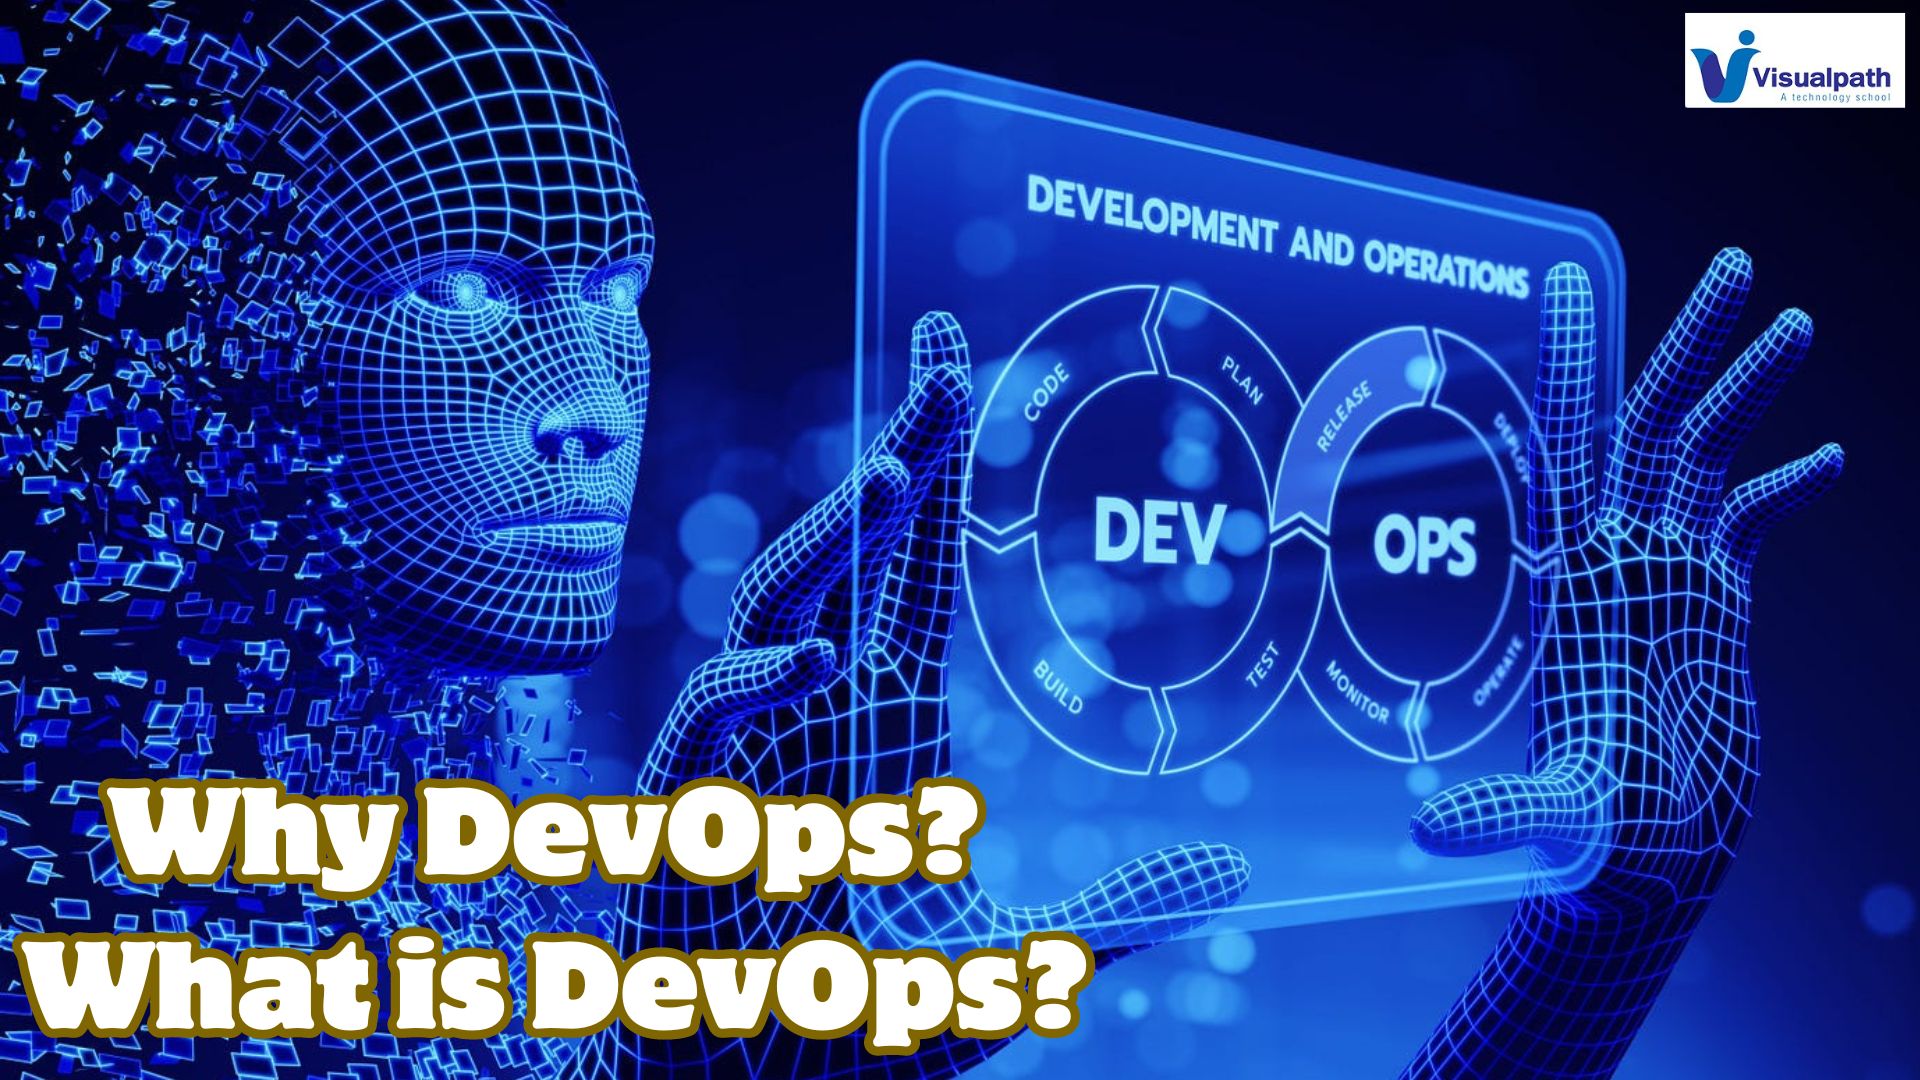 Why DevOps? What is DevOps?